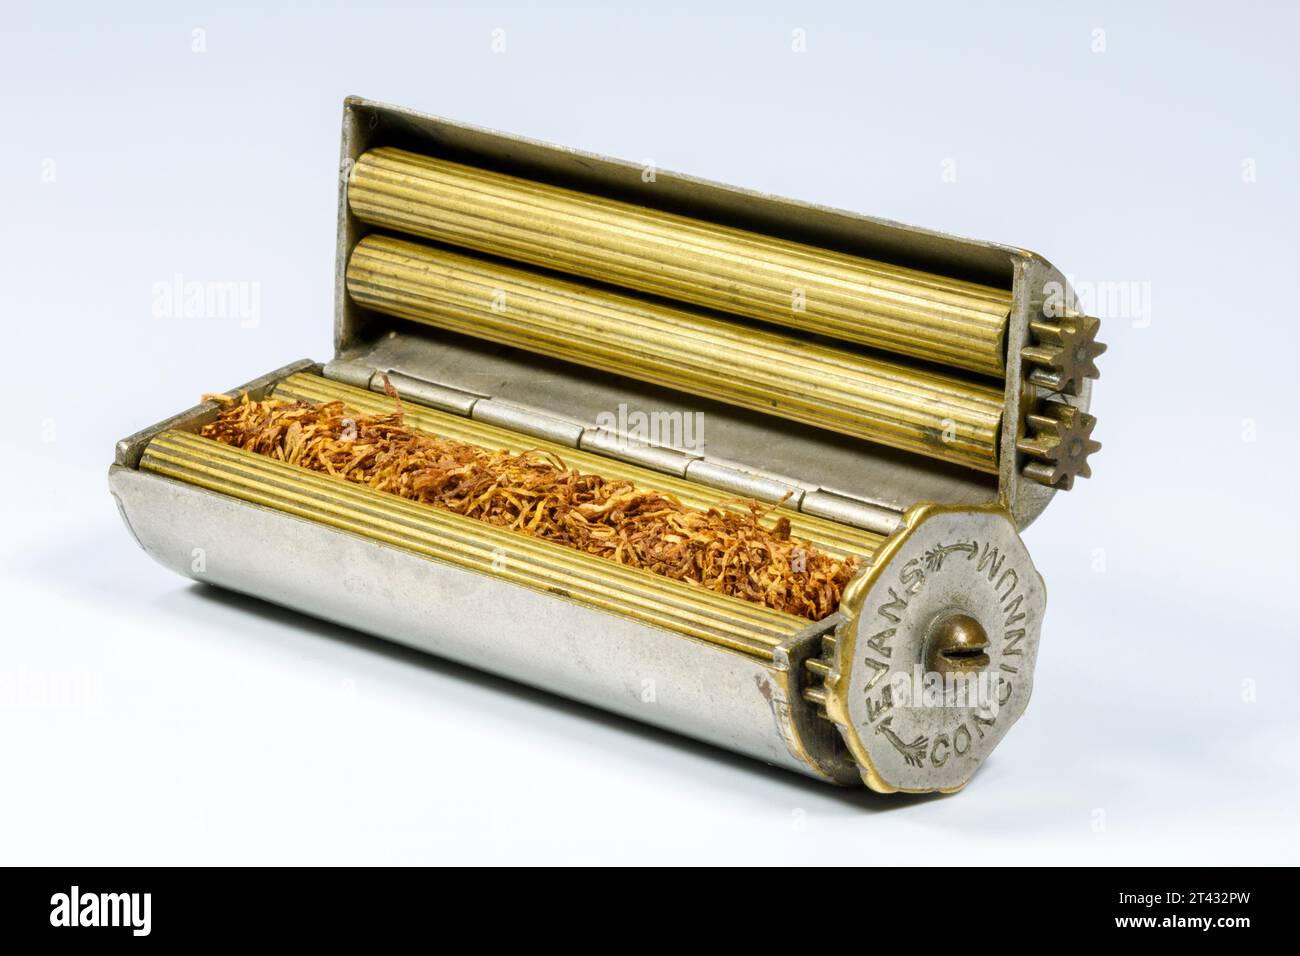 Une machine Conninnum de brevet Evans, un dispositif de roulage de cigarette vintage. Vue intérieure, montrant les rouleaux en laiton avec du tabac. Banque D'Images